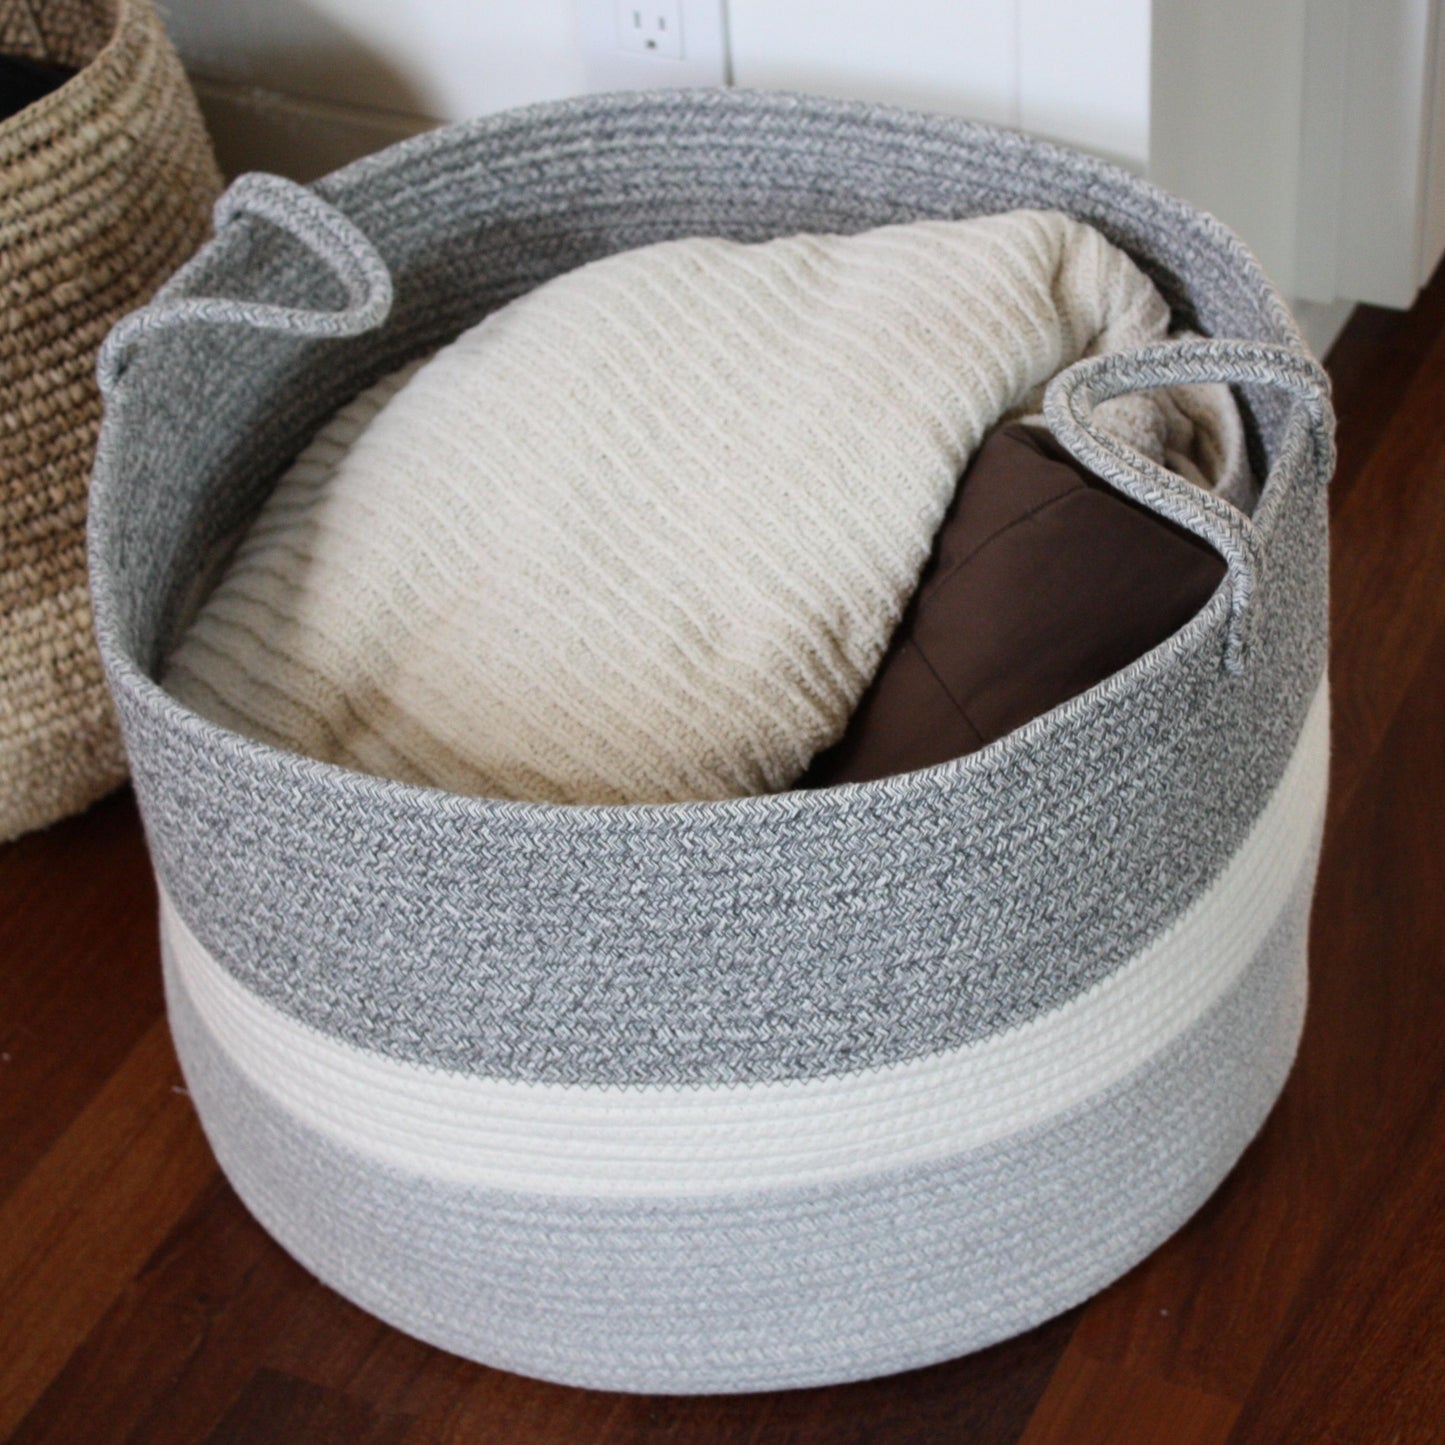 Cotton Rope Blanket Basket Living Room - 20"x13"